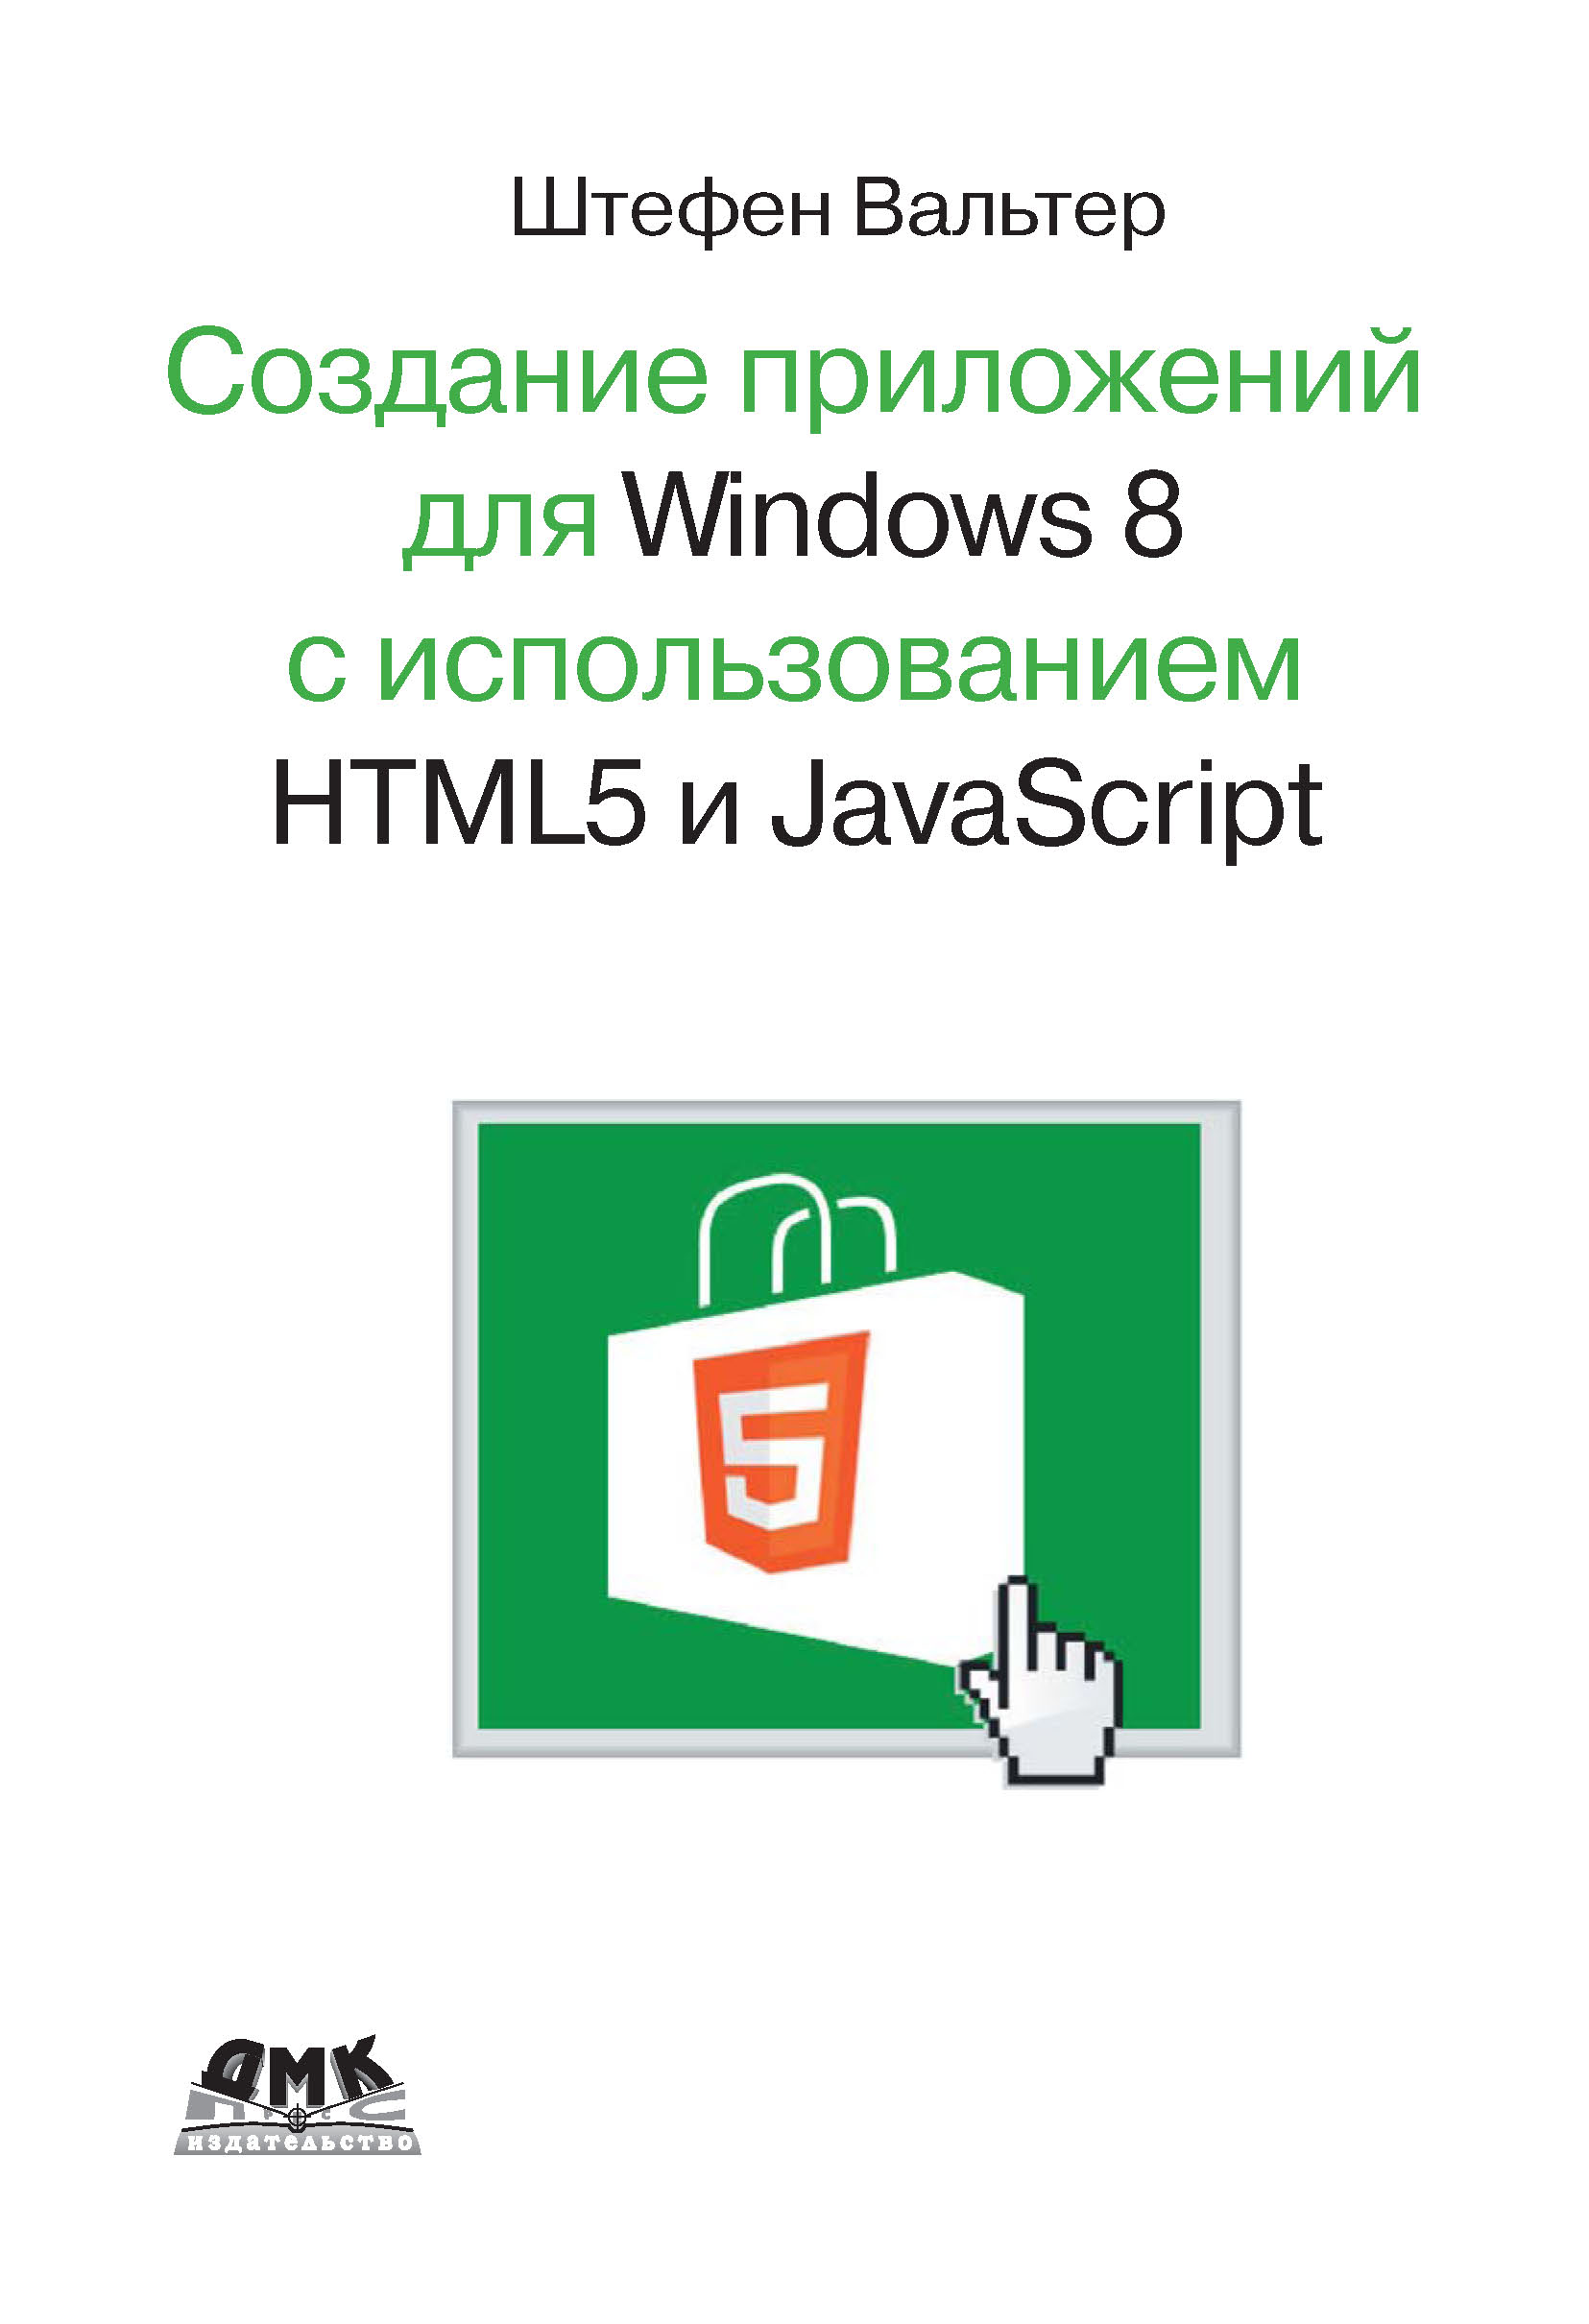 Разработка приложений для Windows 8 с помощью HTML5 и JavaScript. Подробное руководство